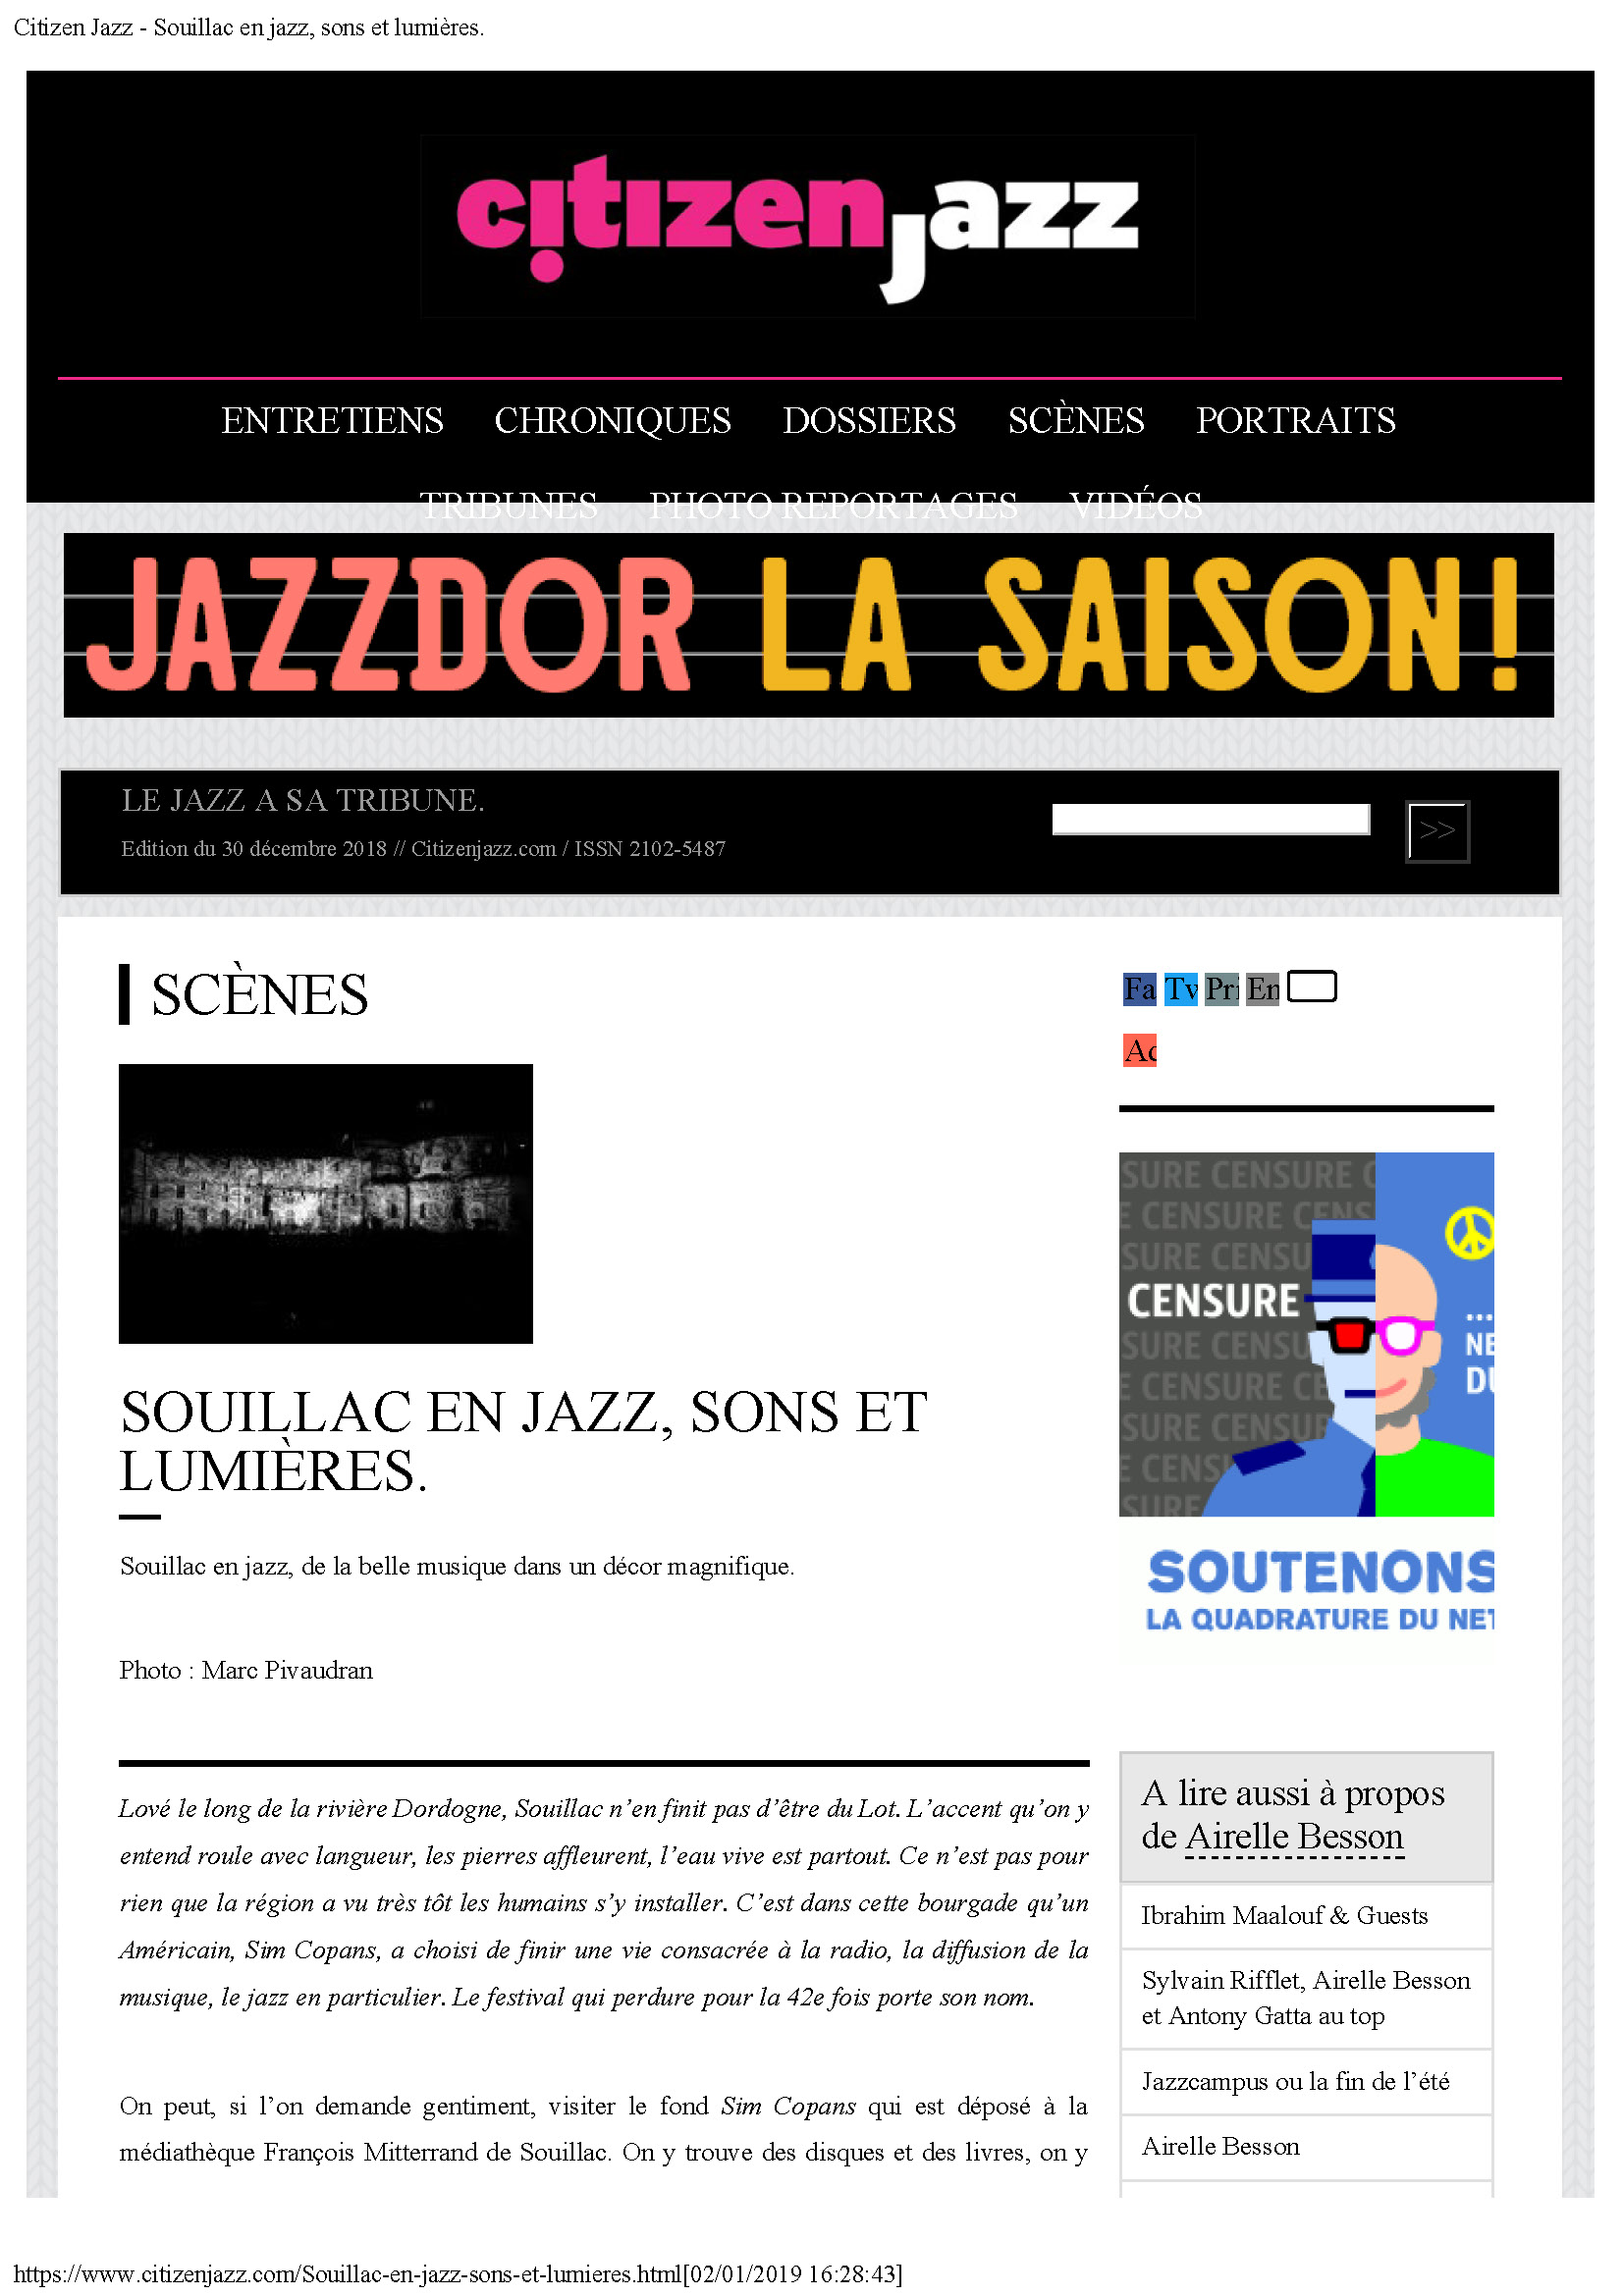 18/07/2017 CitizenJazz Souillac en jazz sons et lumières